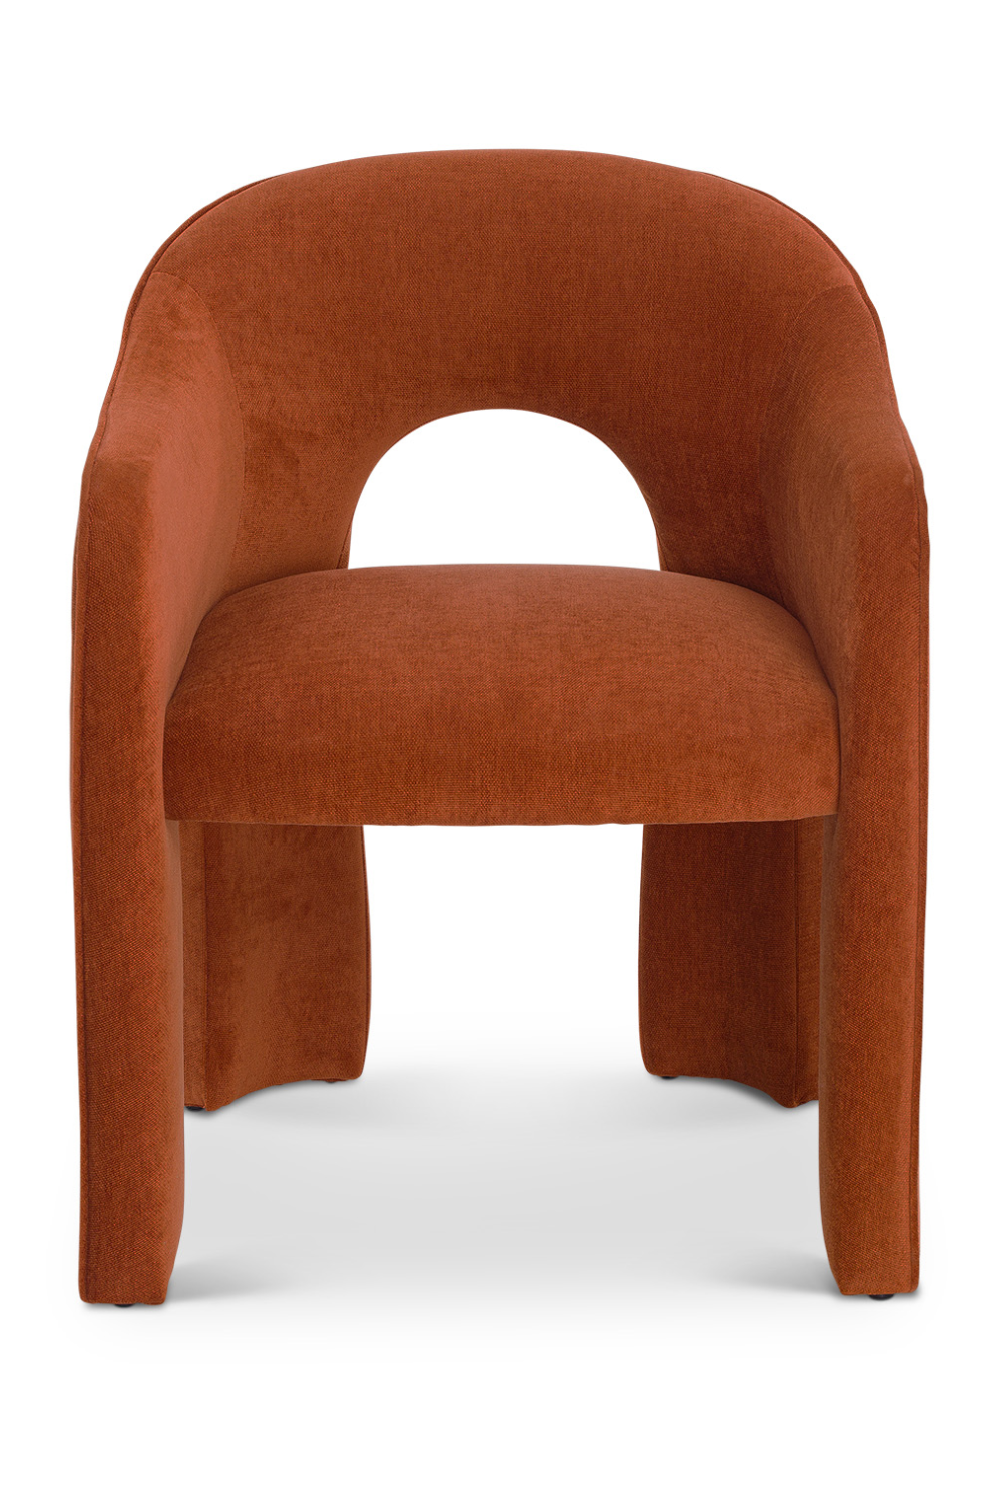 Cut-Out Modern Dining Chair | Liang & Eimil Kara | Oroa.com